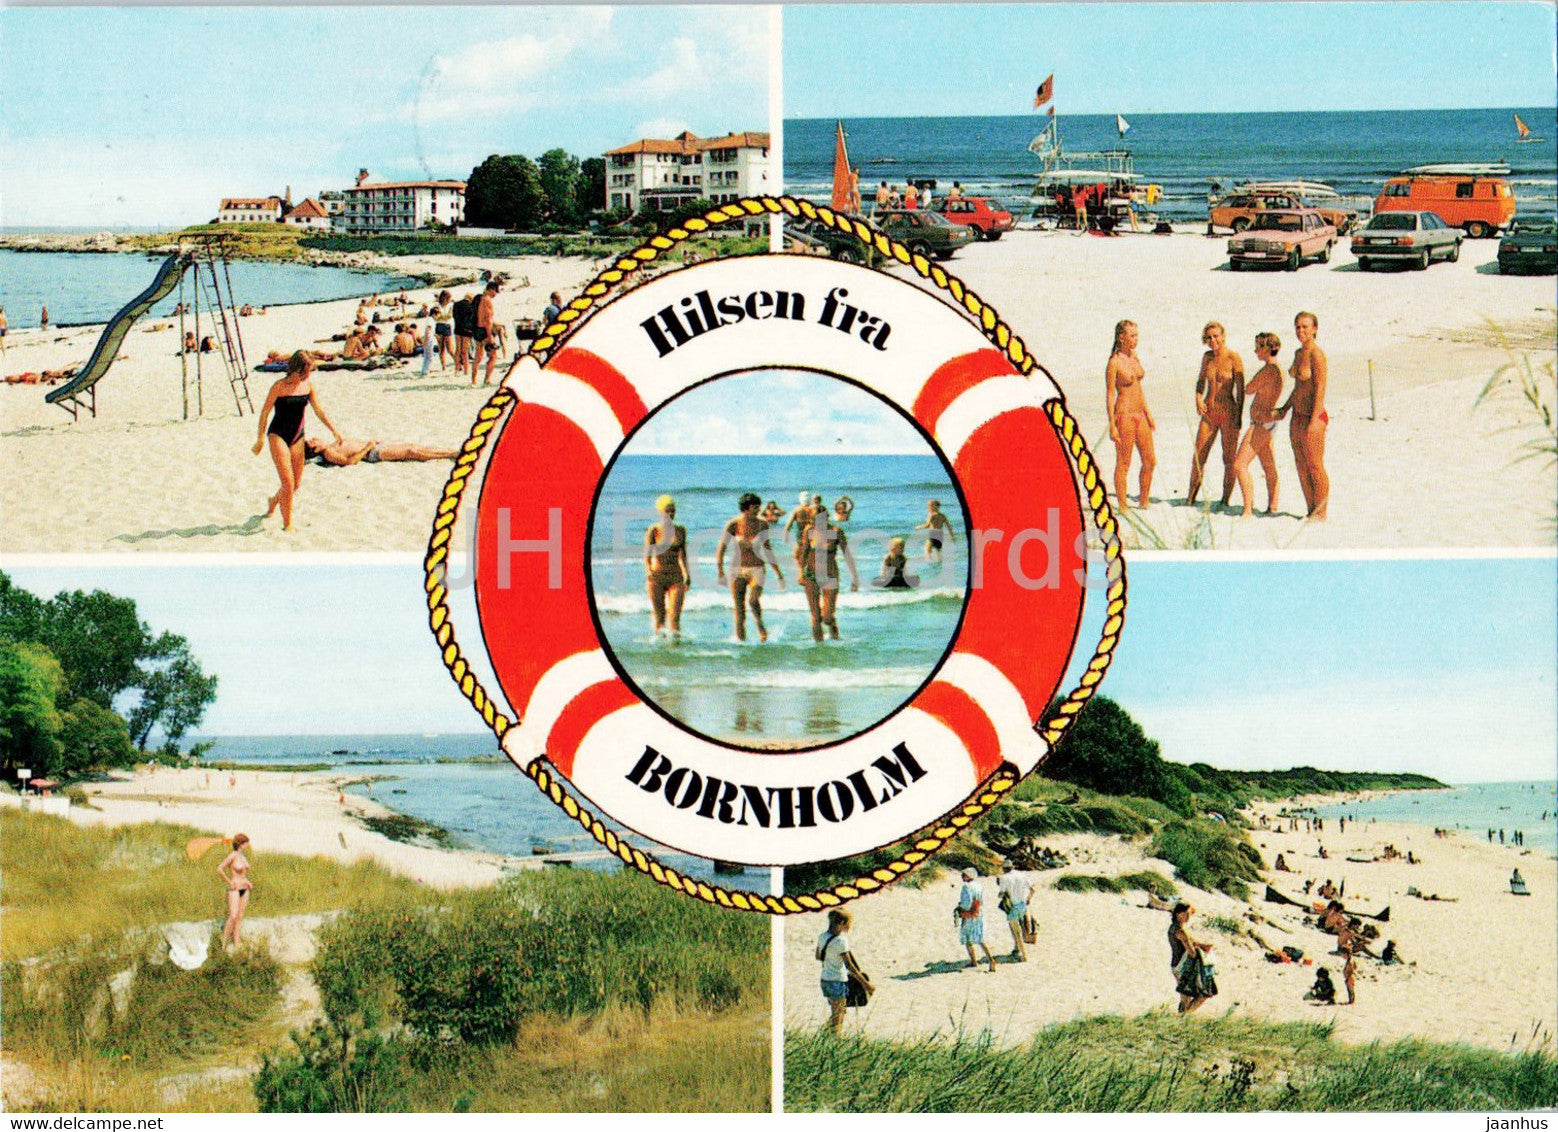 Hilsen fra Bornholm - Balka - Melsted - Somarken - beach - 1985 - Denmark - used - JH Postcards